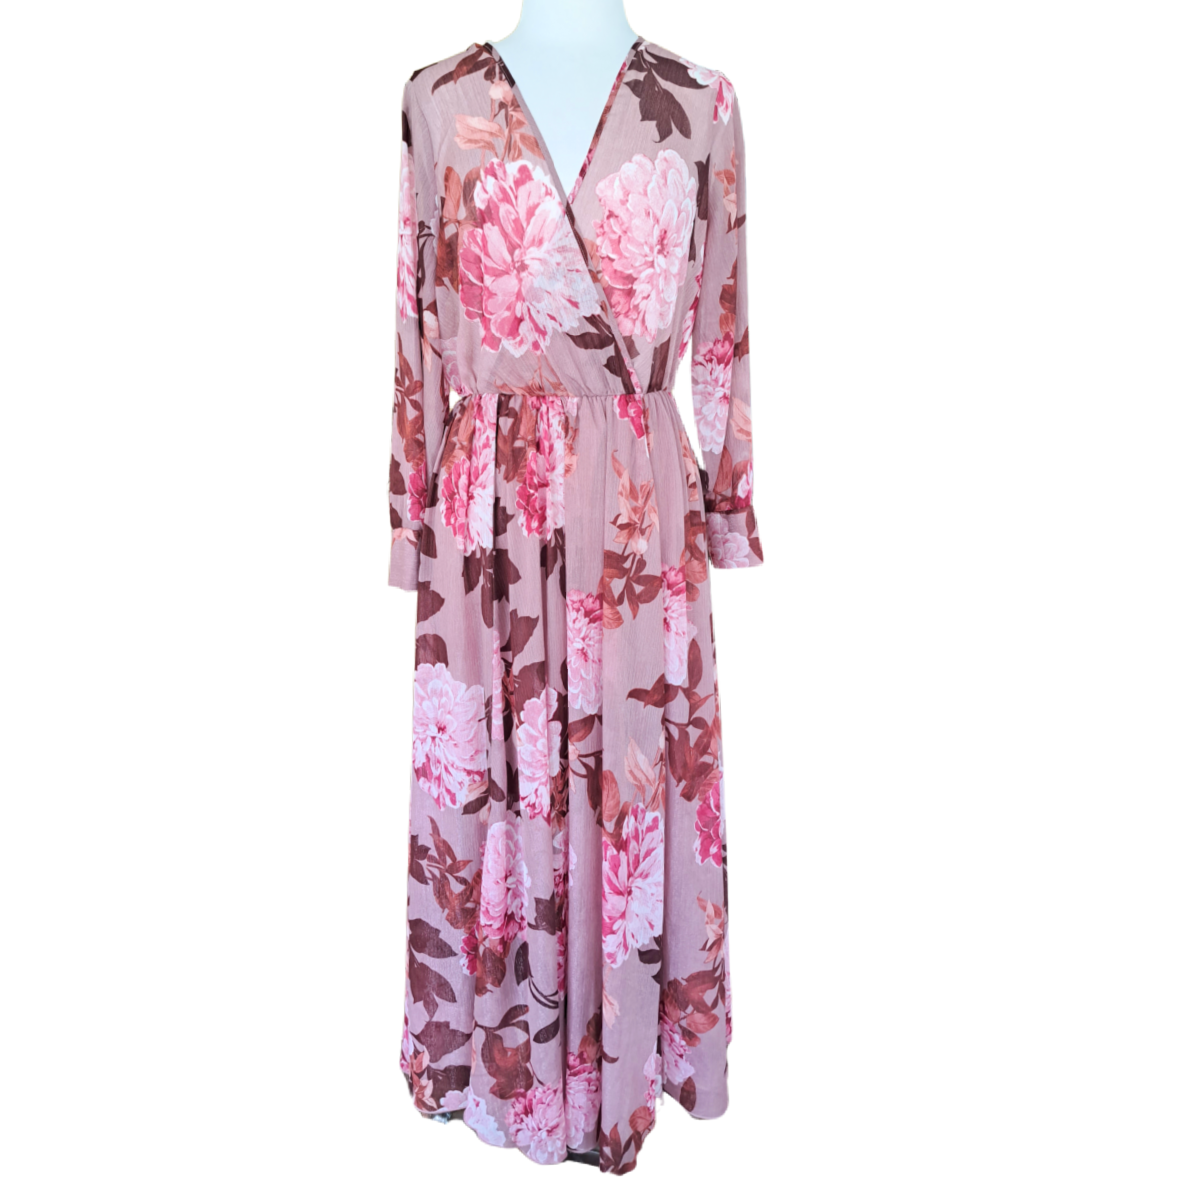 Alexa B Nites Pink Floral Maxi Dress Size 8 Long Sleeve Flowy 